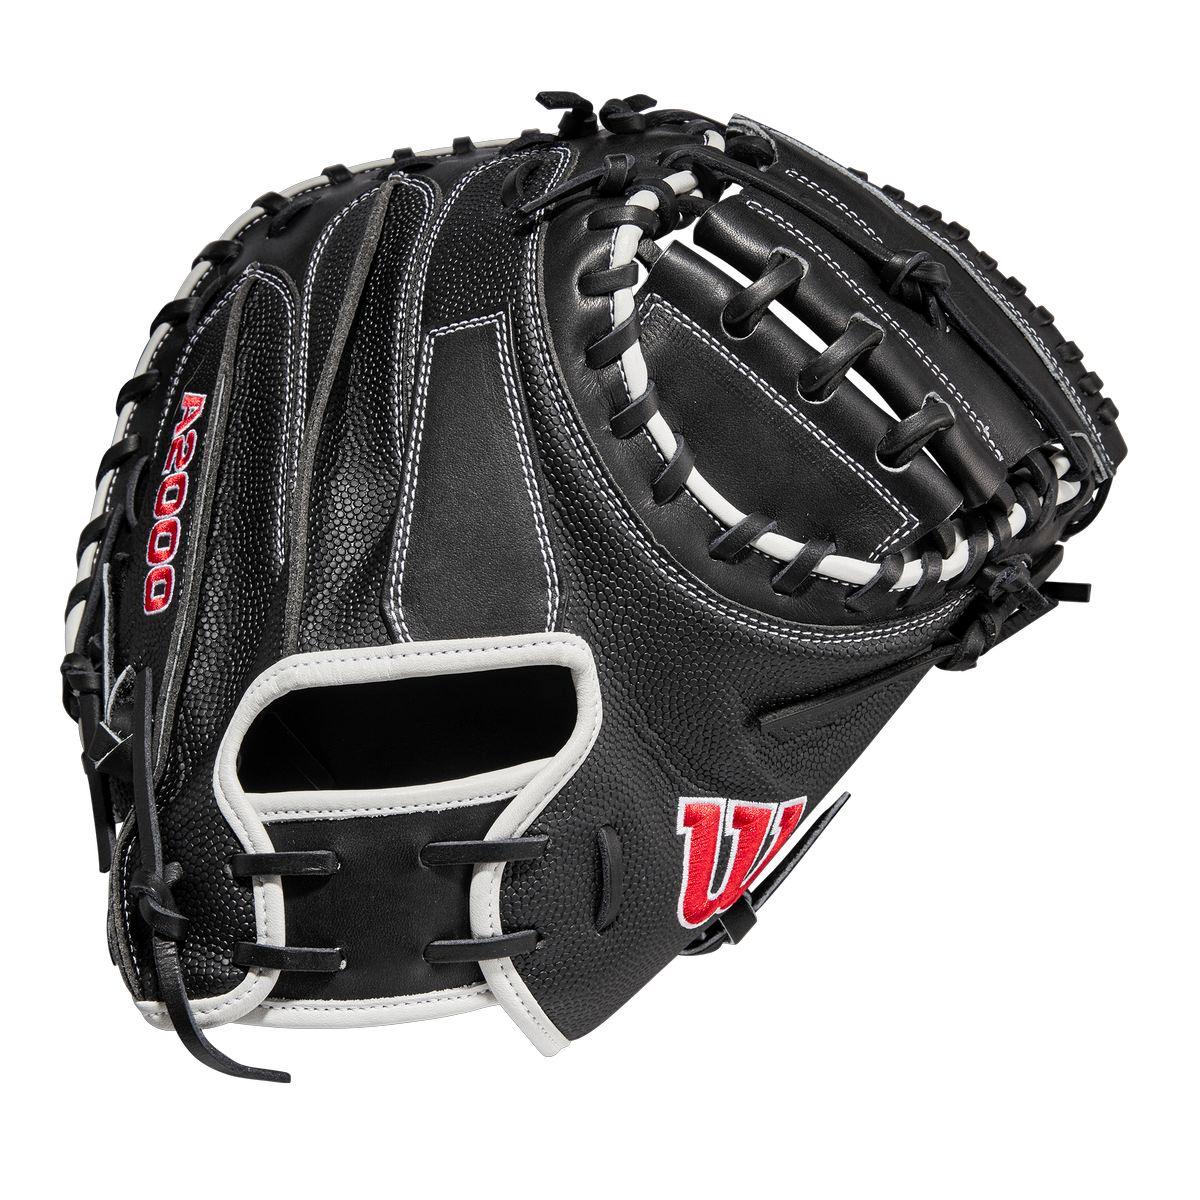 A2000 M1D 33.5" Senior Catchers Baseball Glove - Sports Excellence